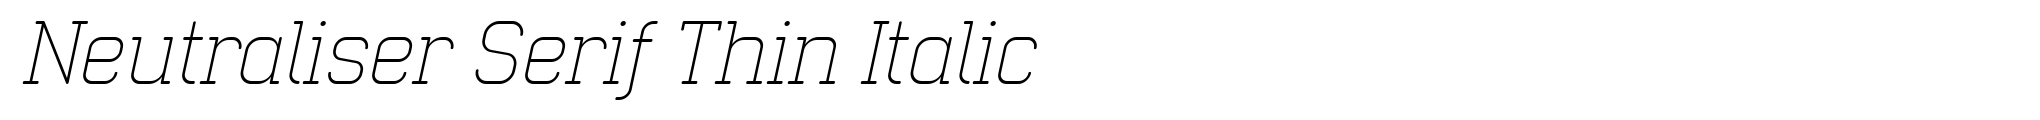 Neutraliser Serif Thin Italic image